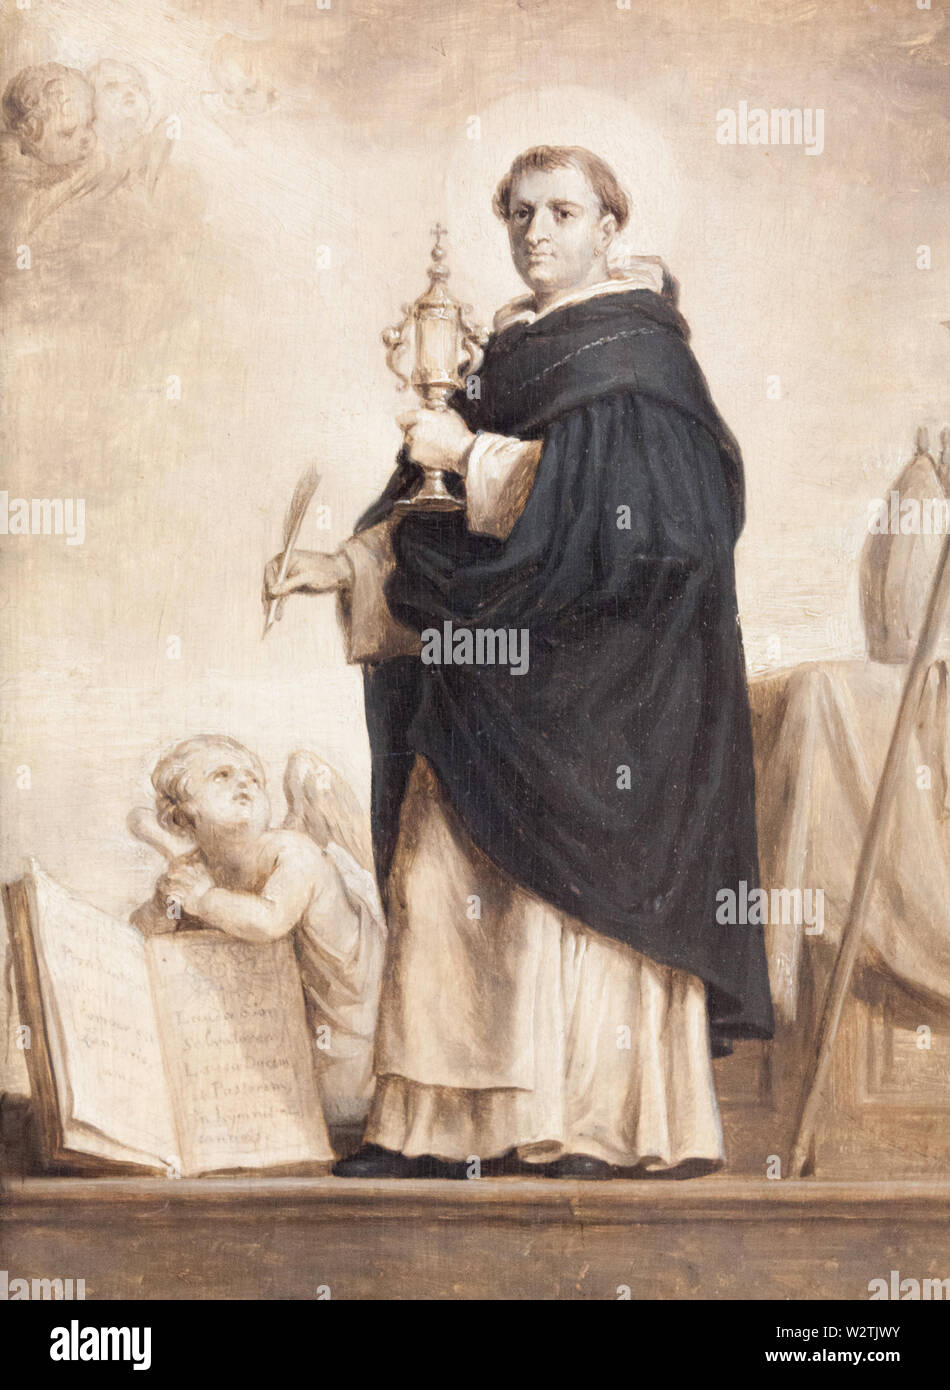 La peinture de Saint Thomas d'Aquin par Abraham Van Diepenbeek (1596-1675). Actuellement affichée dans le Musée des beaux-arts de Valenciennes. Banque D'Images